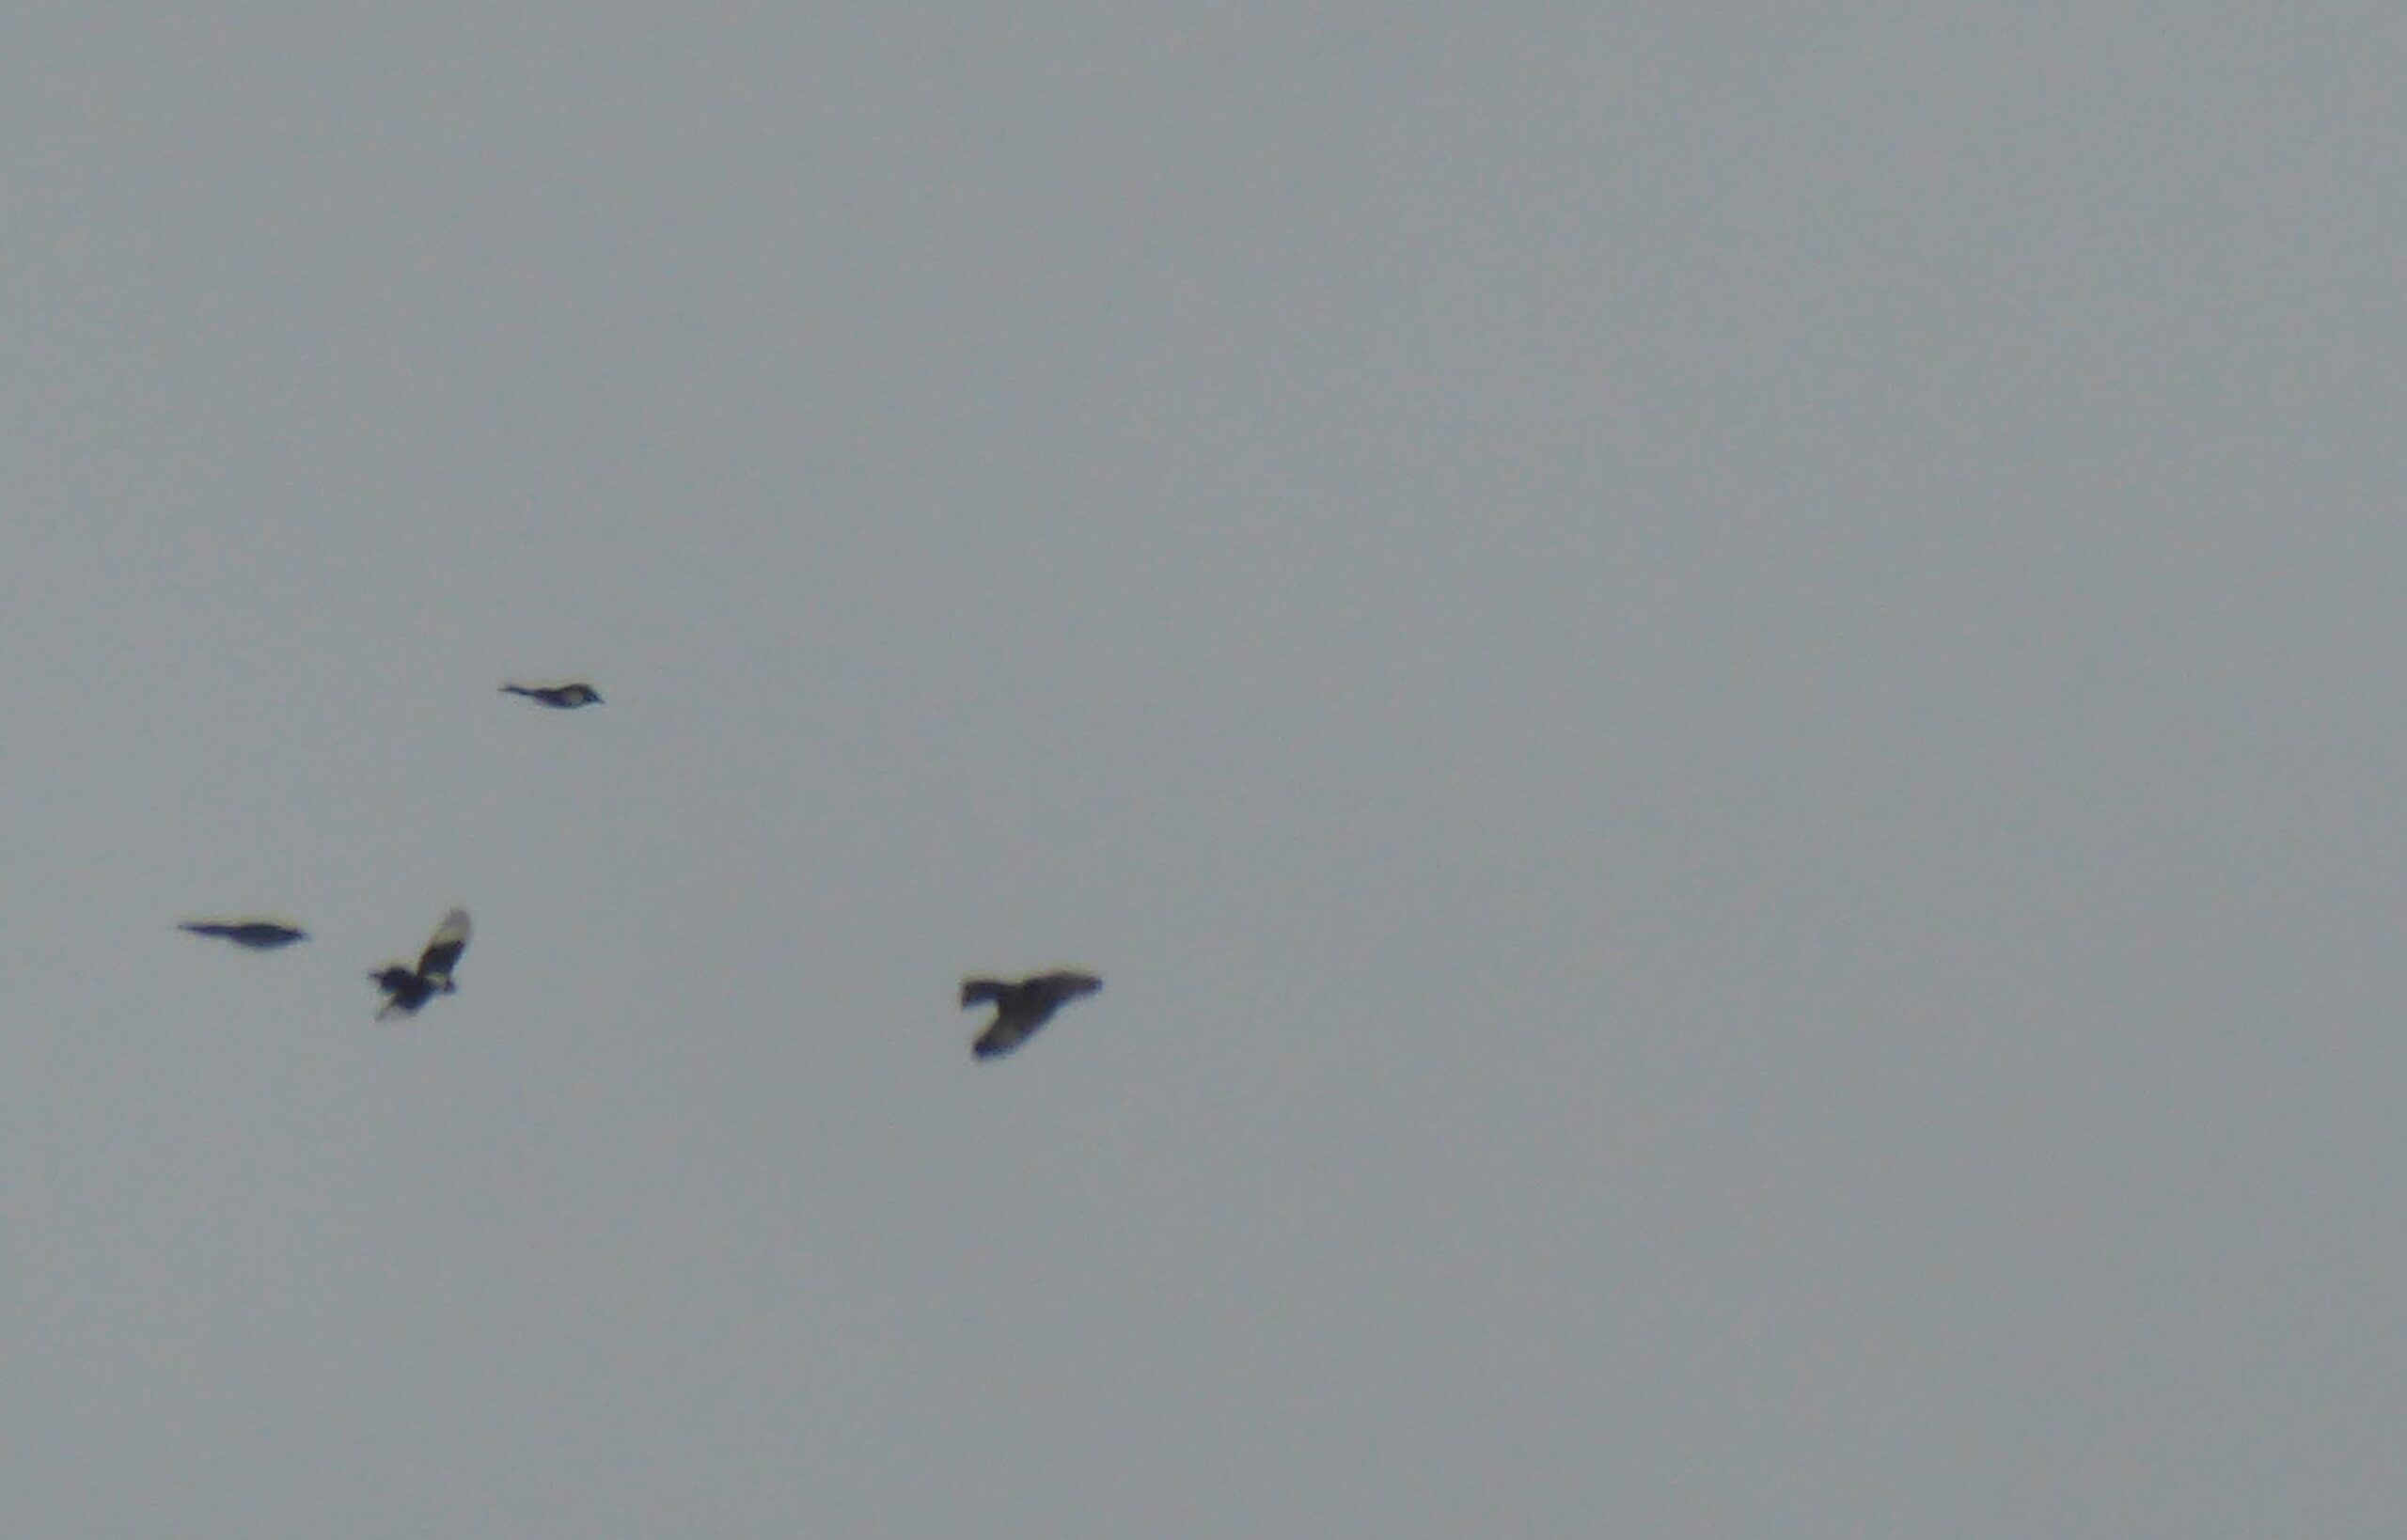 Magpies mobbing a buzzard